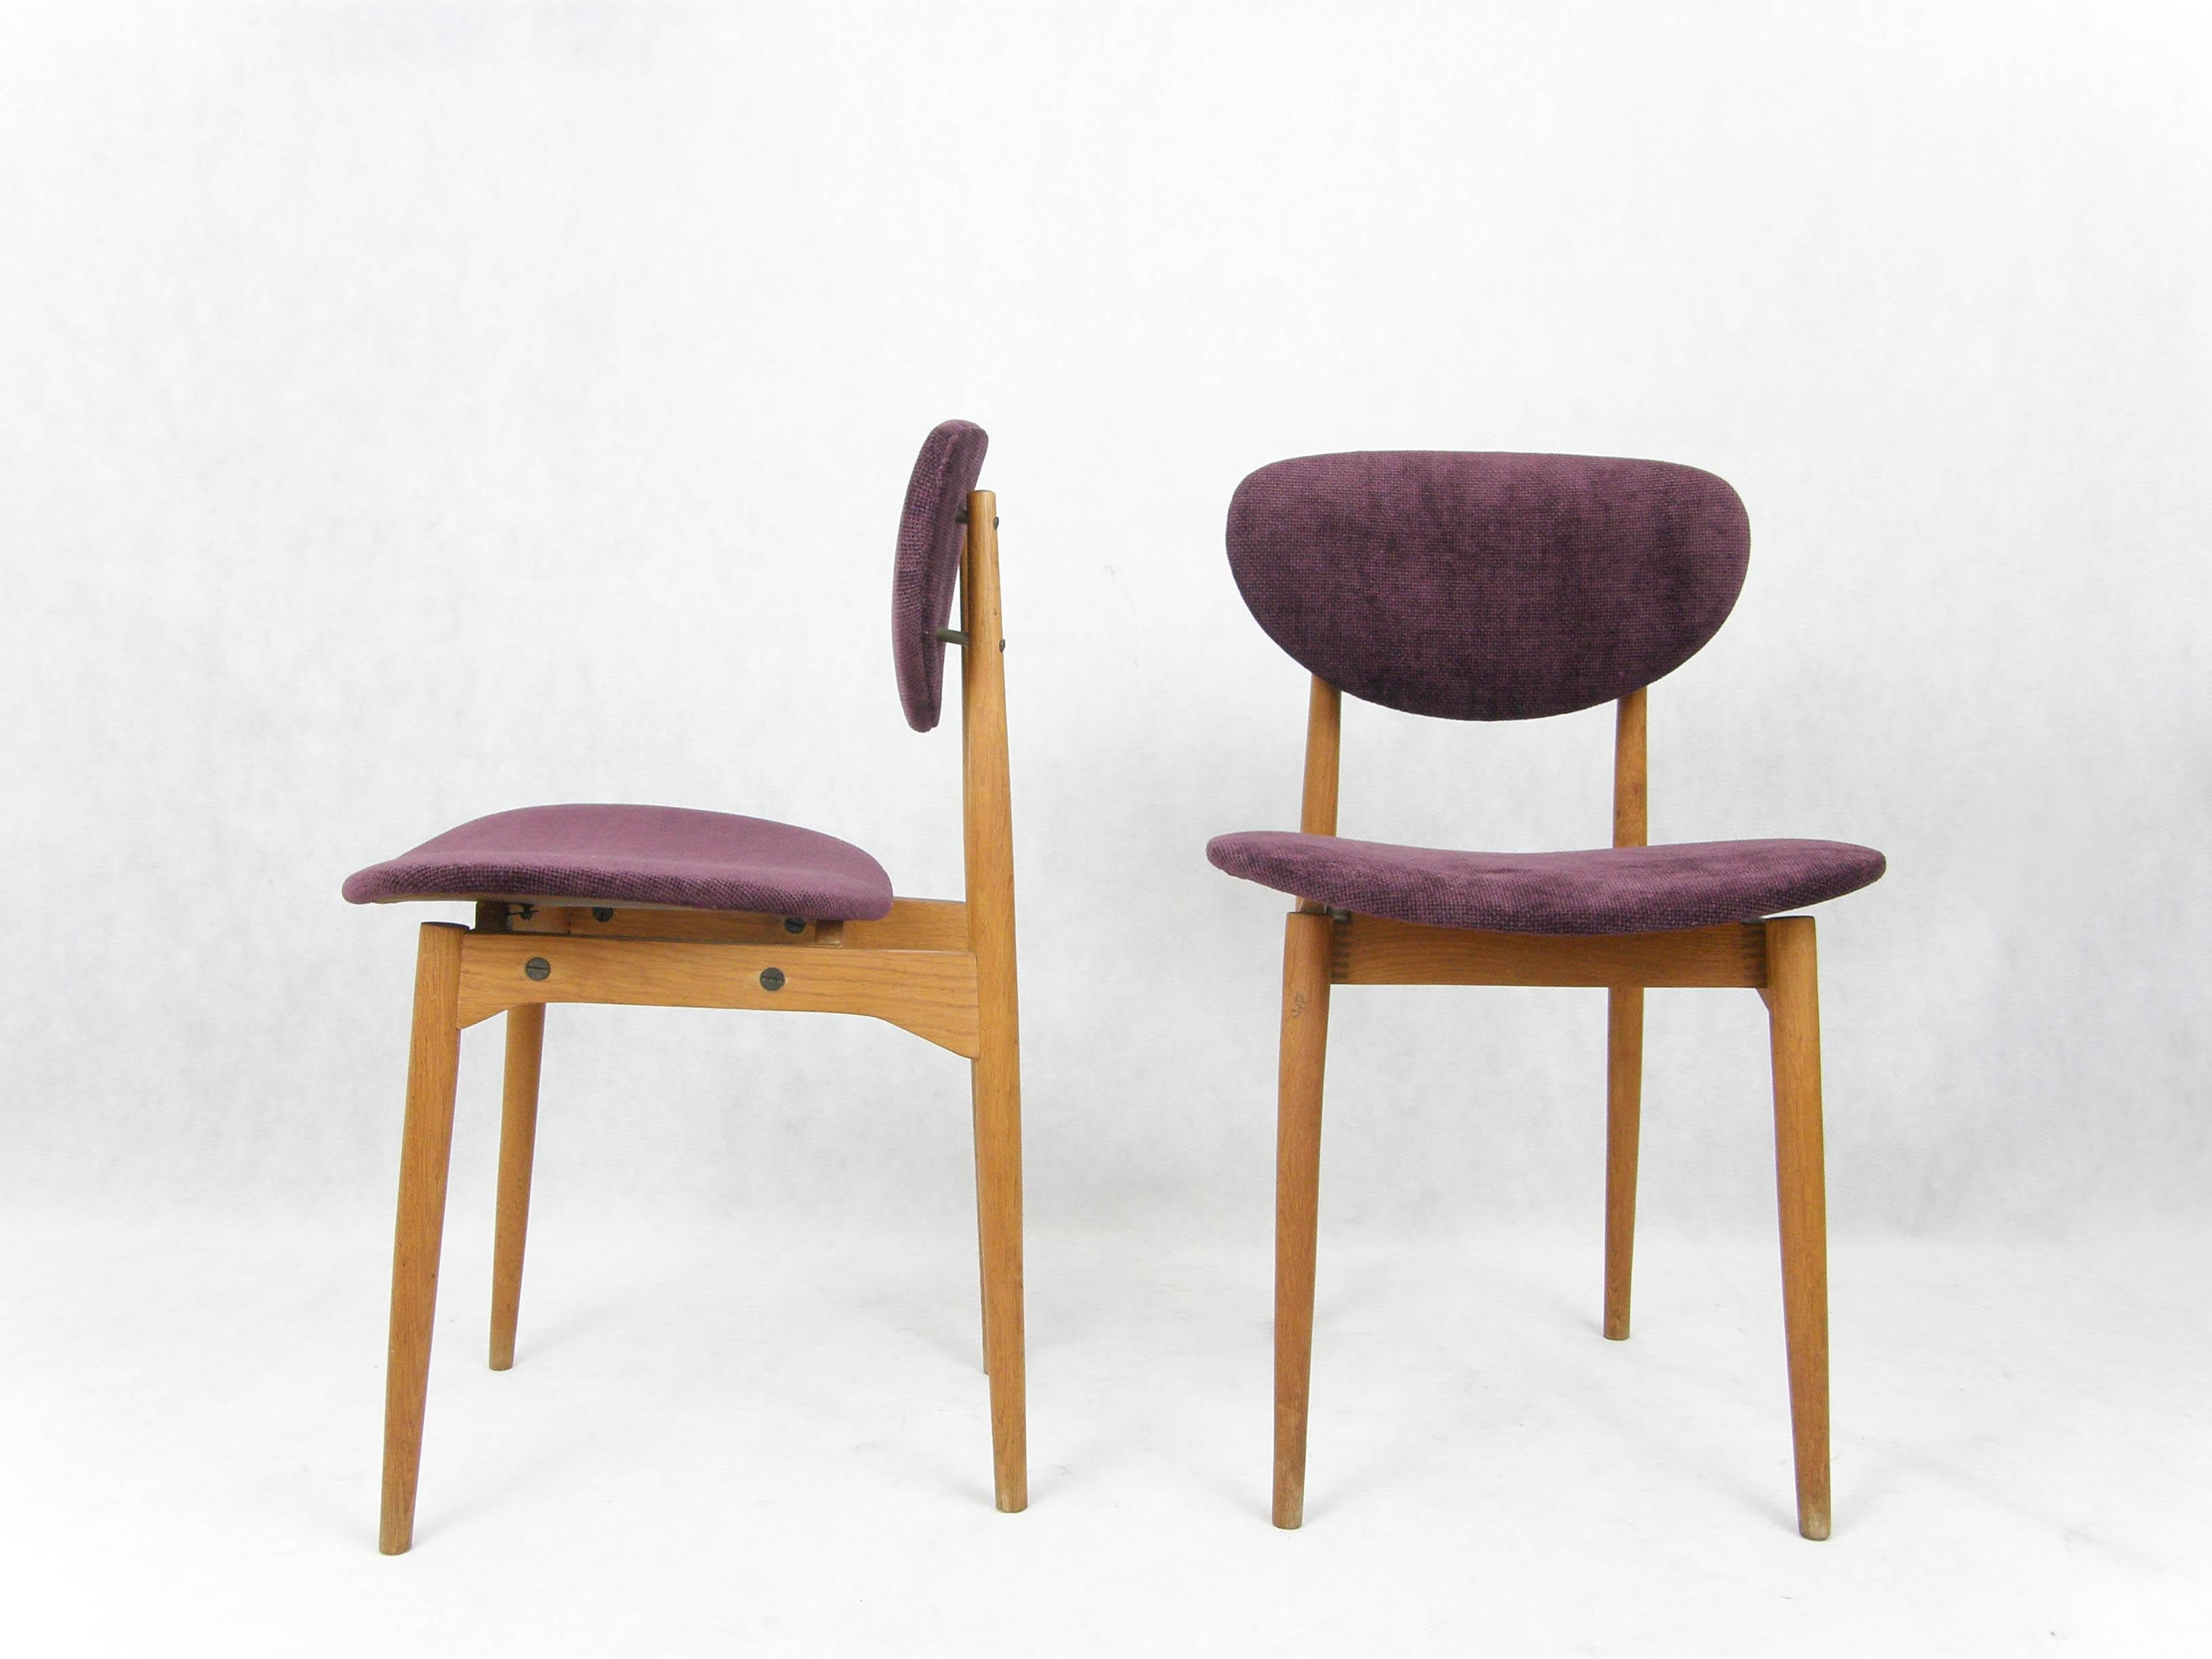 Coppia di sedie da pranzo o da camera di produzione italiana degli anni 50.
Ritapezzate in ciniglia viola.

In ottime condizioni, solide e robuste.